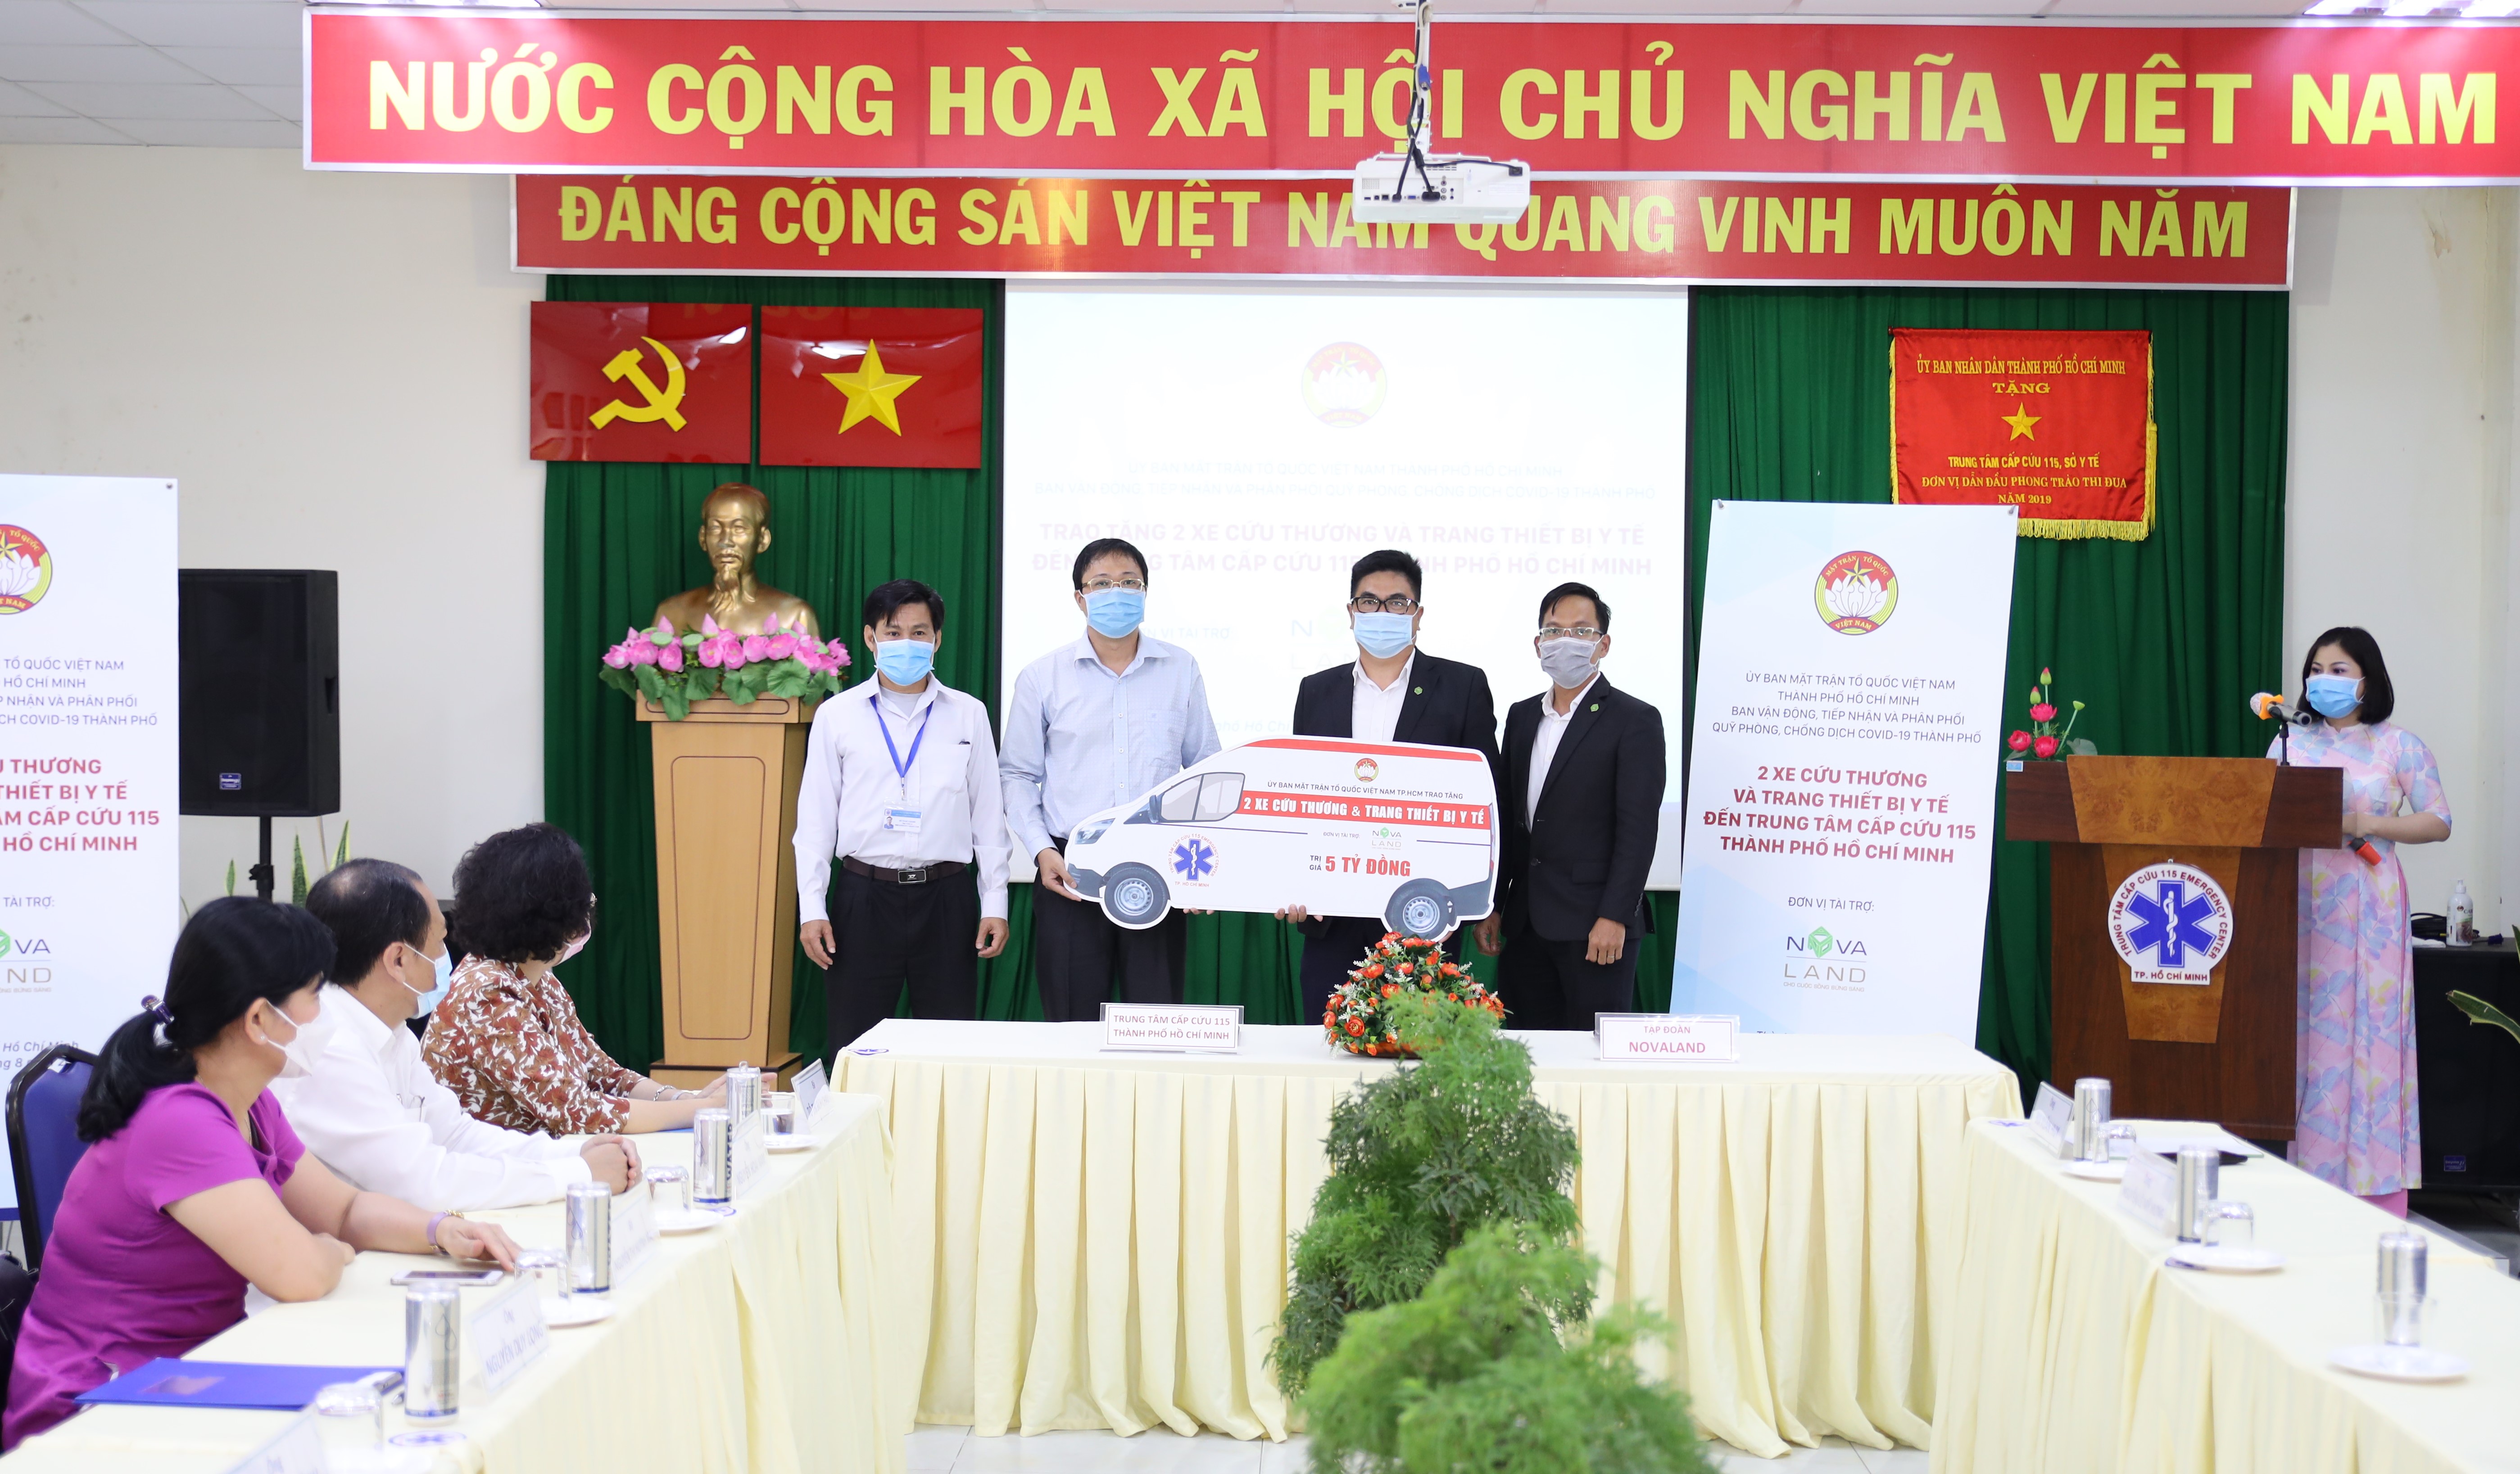 Ông Nguyễn Duy Long, Giám đốc Trung tâm Cấp cứu 115 TP.HCM tiếp nhận 2 xe cấp cứu do Tập đoàn Novaland tài trợ